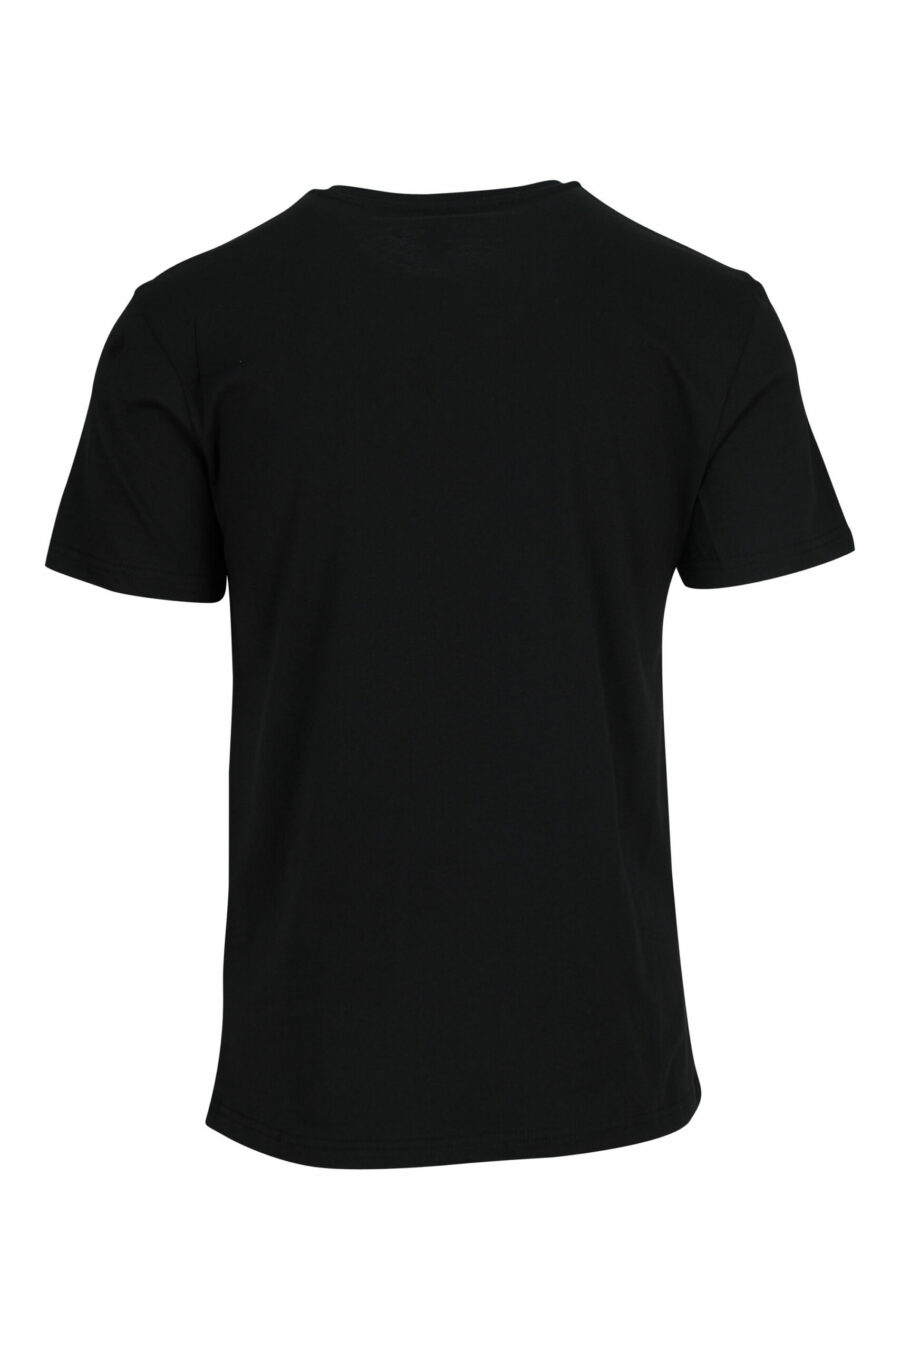 T-shirt preta com mini-logotipo multicolorido - 667113672588 1 scaled